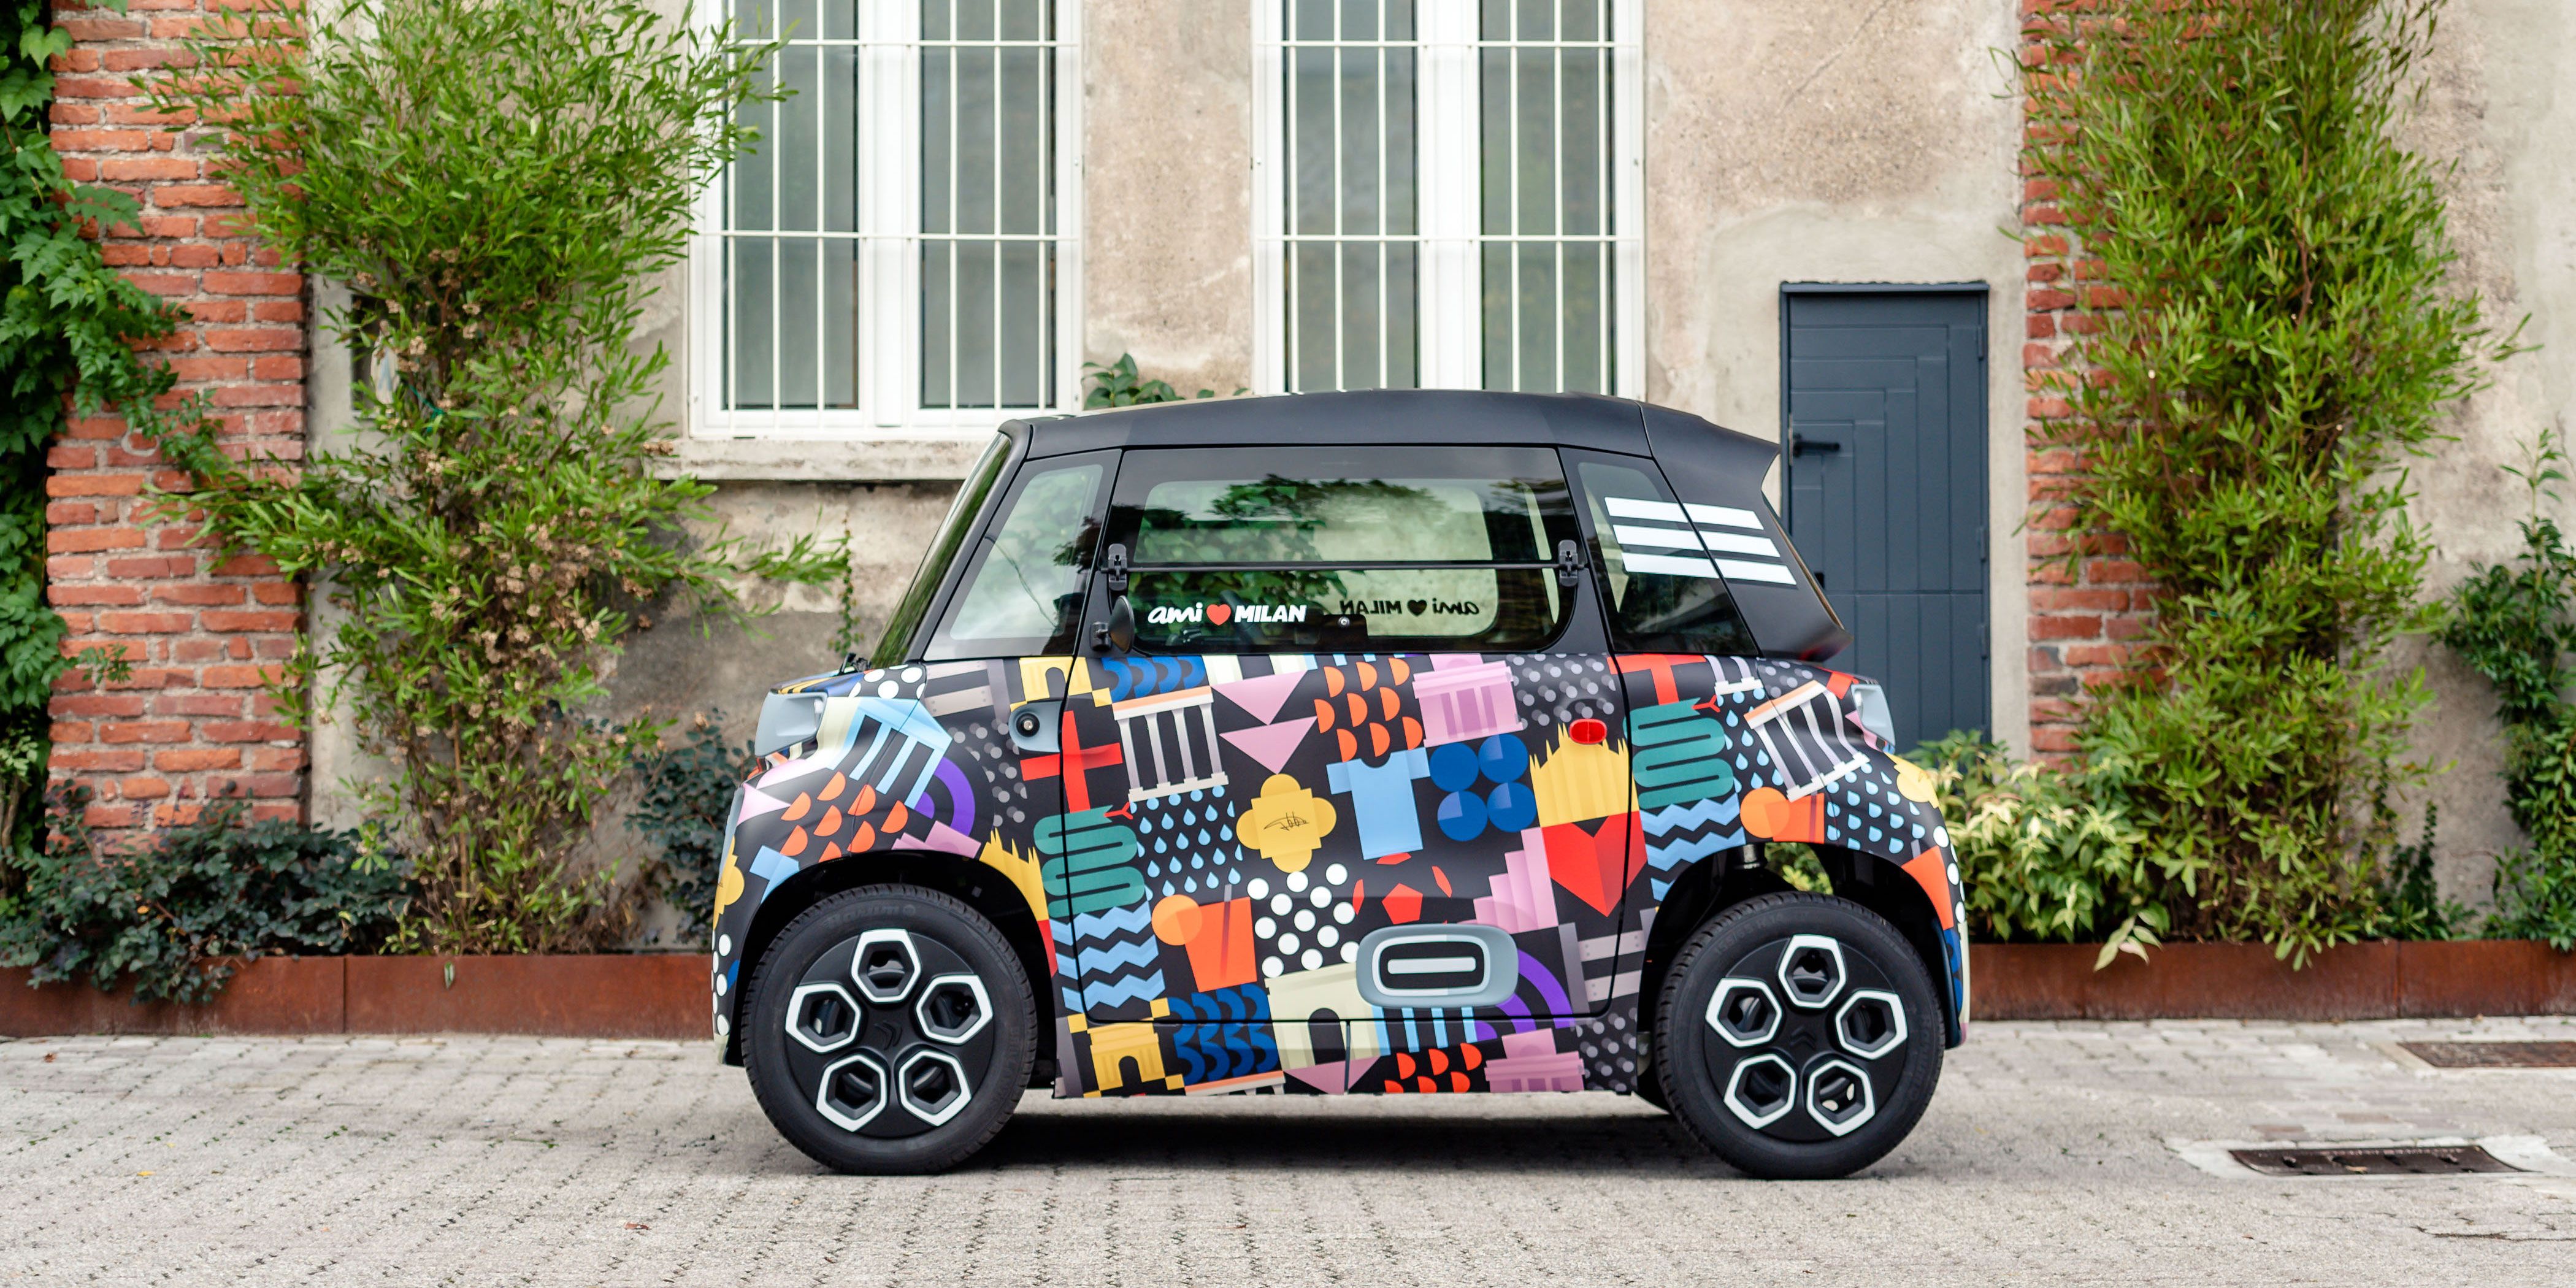 Citroën Ami -100% ëlectric, la smart city alla prova